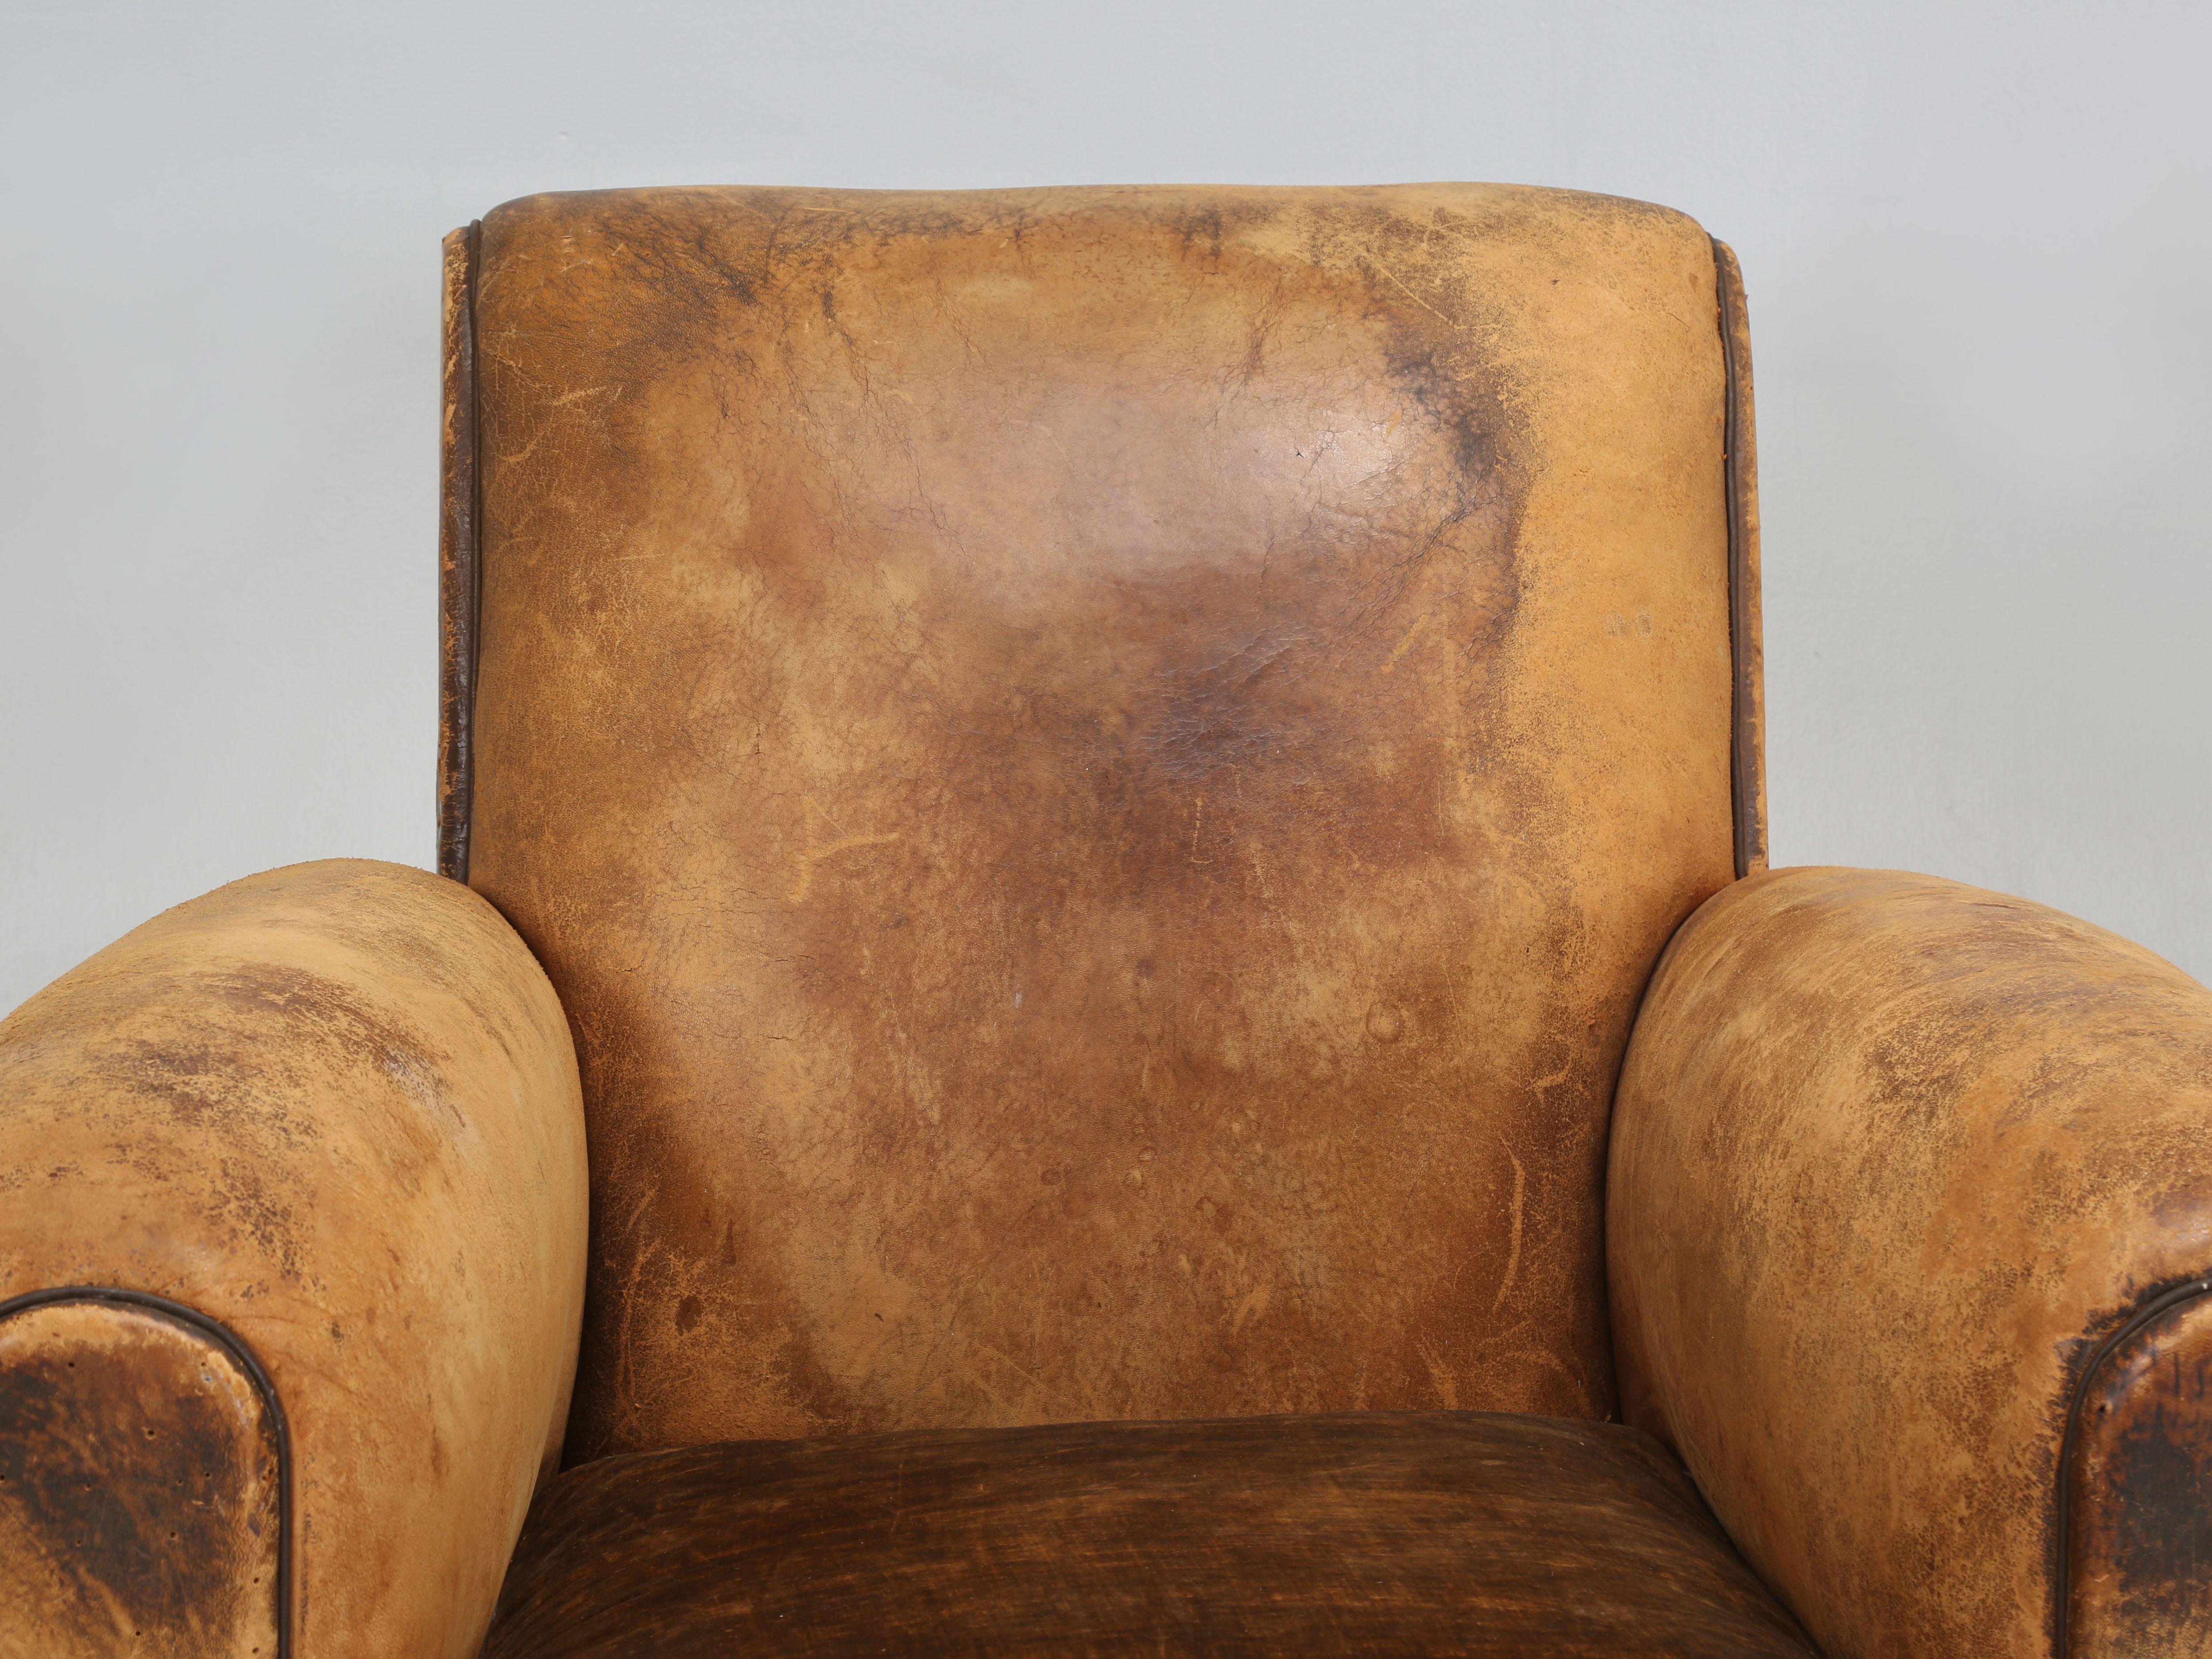 Paire de fauteuils club en cuir français entièrement restaurés de la période Art Déco. Notre service de tapisserie Old Plank restaure des fauteuils Club français depuis plus de 30 ans et ce dont nous sommes le plus fiers, c'est que lorsque nous